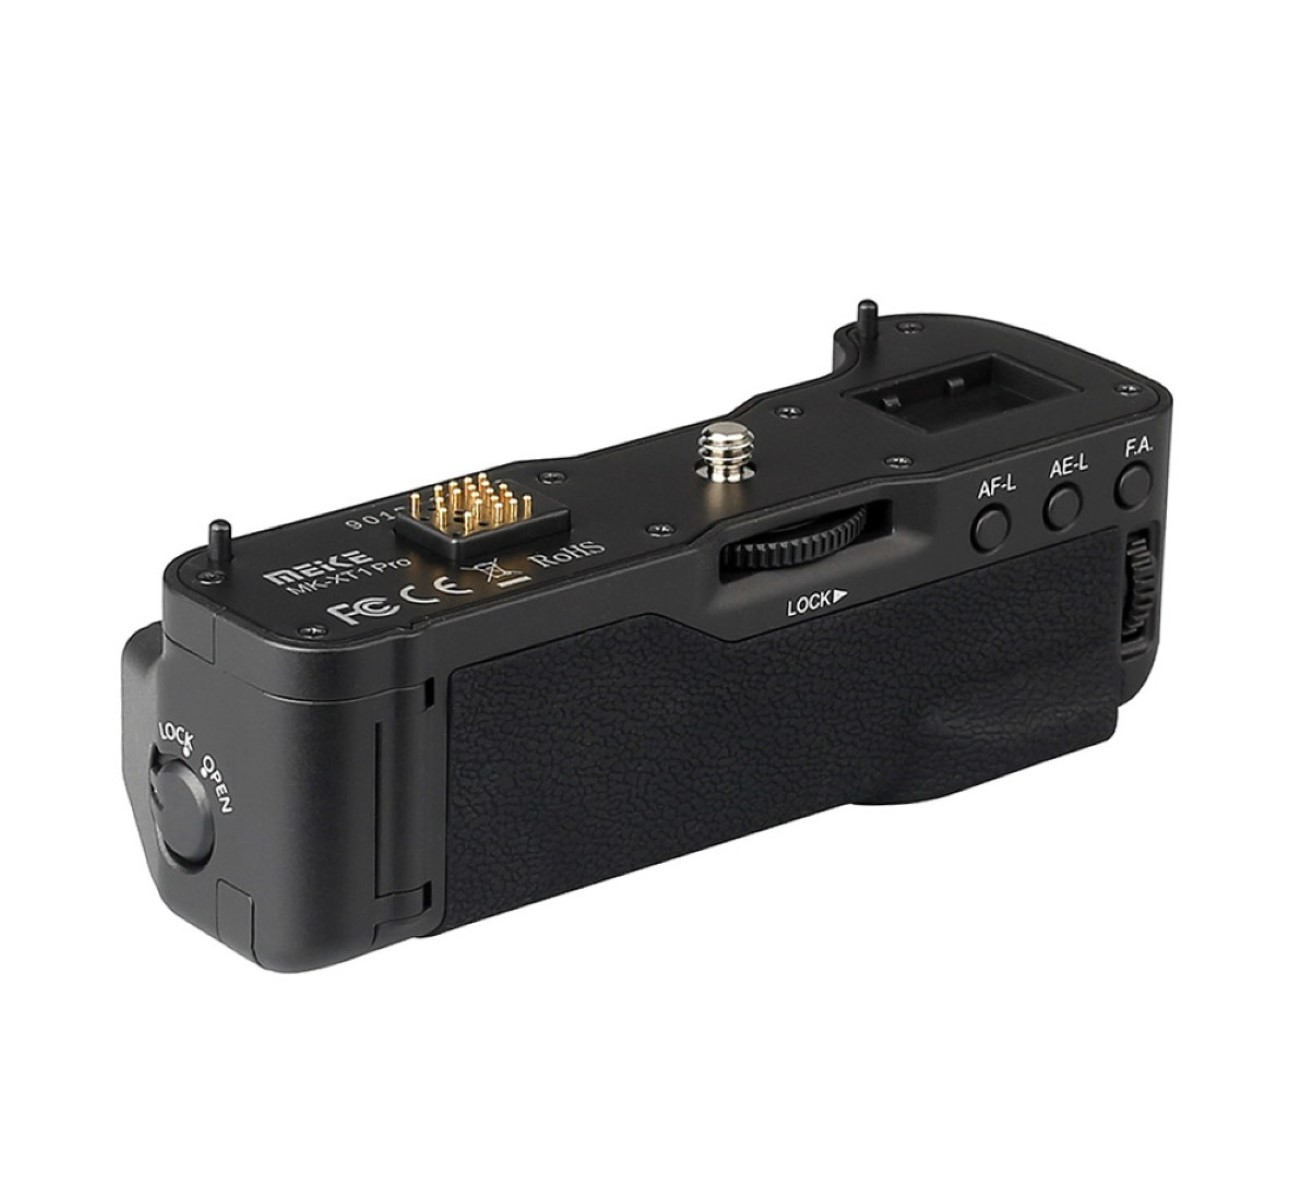 MK-XT1, für Batteriegriff optimal VG-XT1 MEIKE Batteriegriff, wie Black Fujifilm Hochformat-Fotografie X-T1